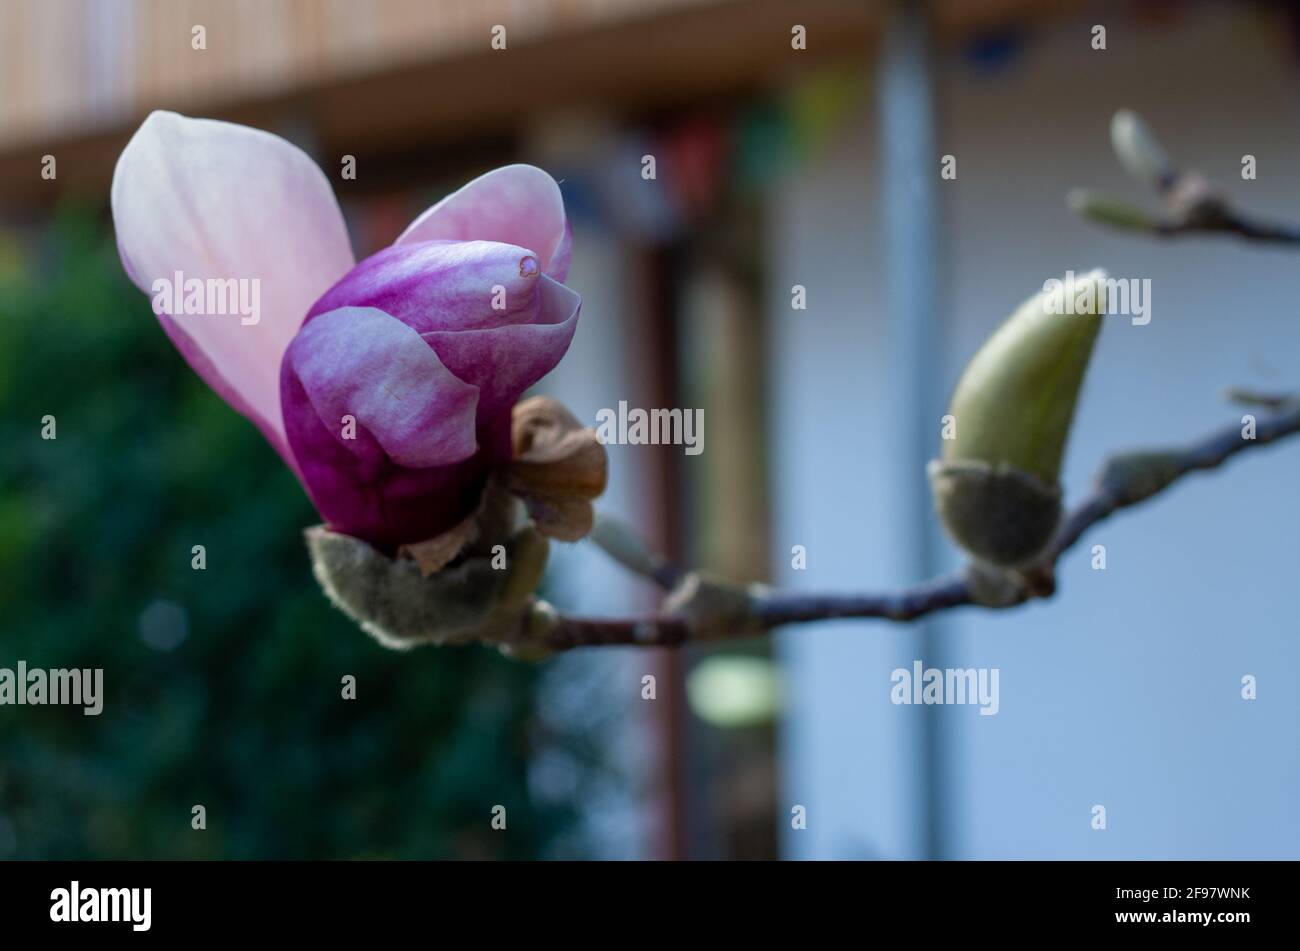 Fiore viola singolo di una magnolia accanto ad un fermo germoglio chiuso Foto Stock